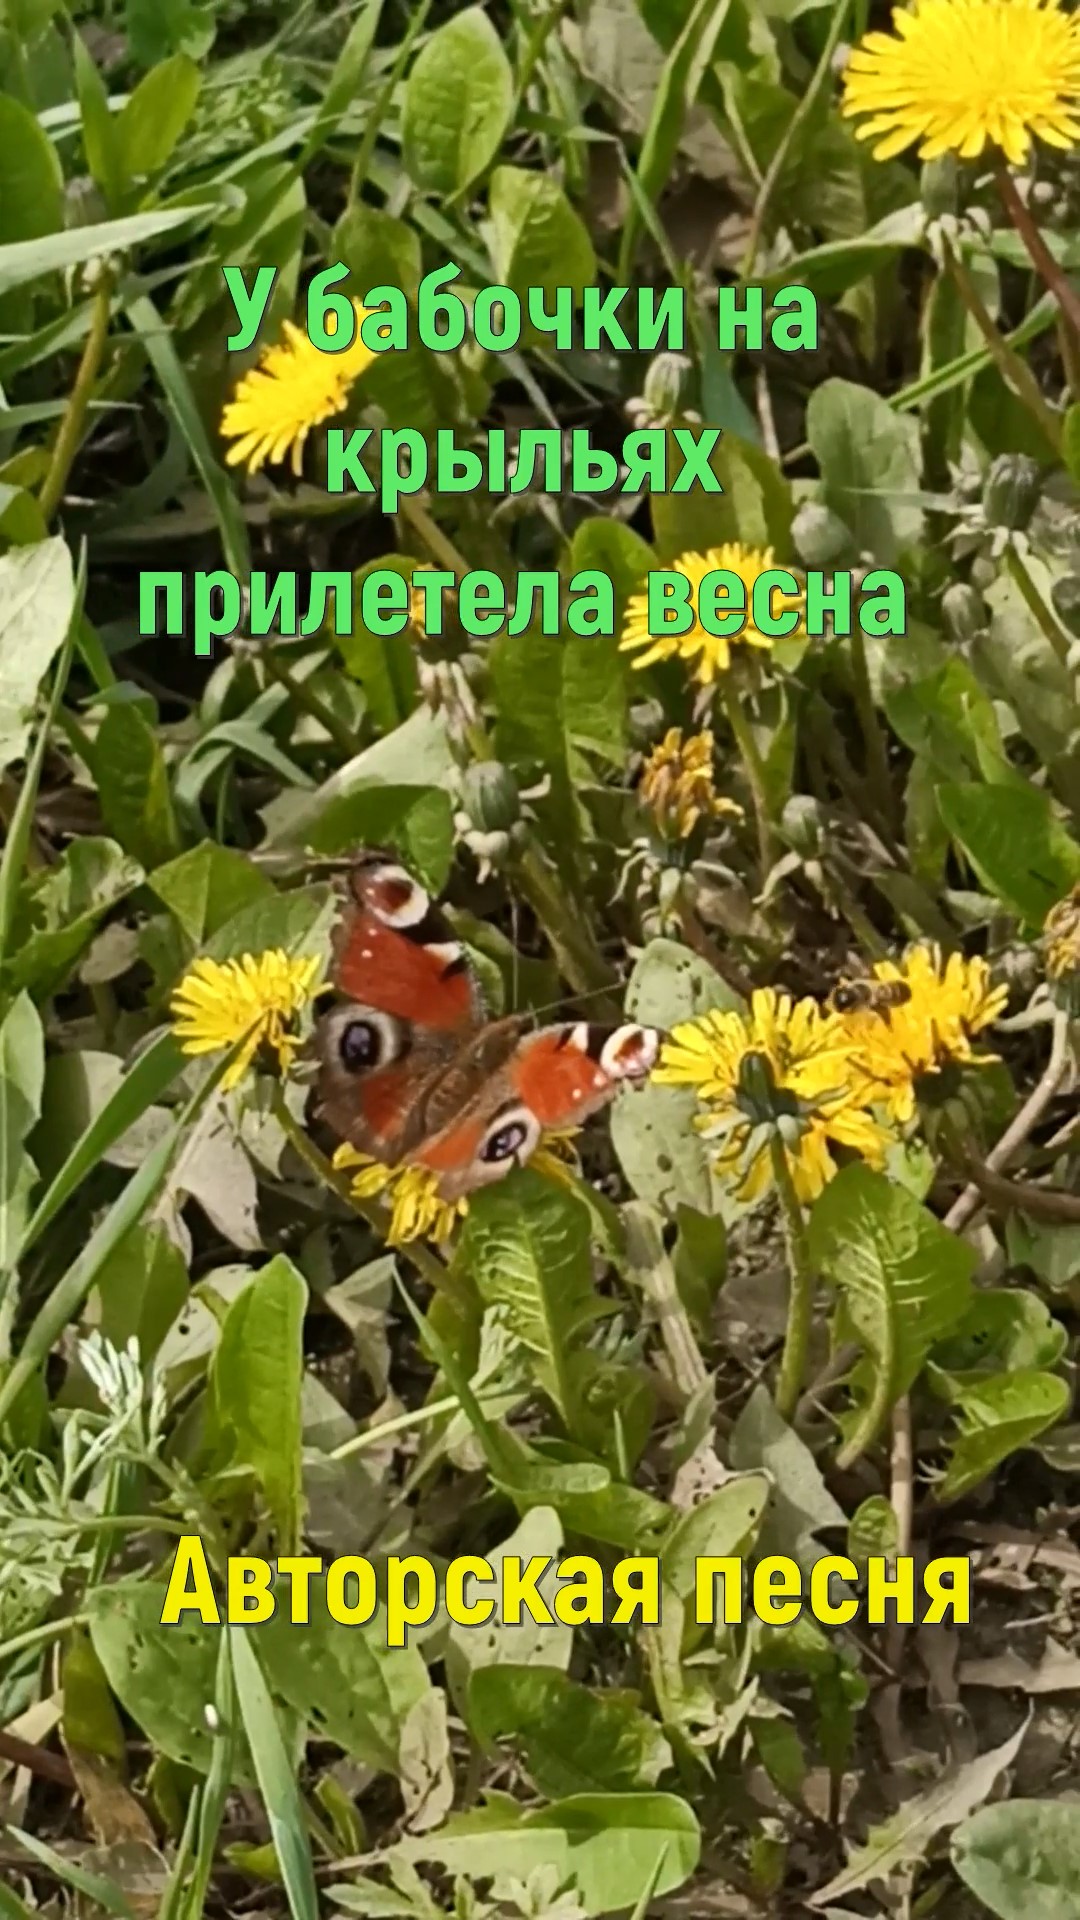 У бабочки на крыльях прилетела весна #авторская песня #песня под гитару # бардовская песня #весна